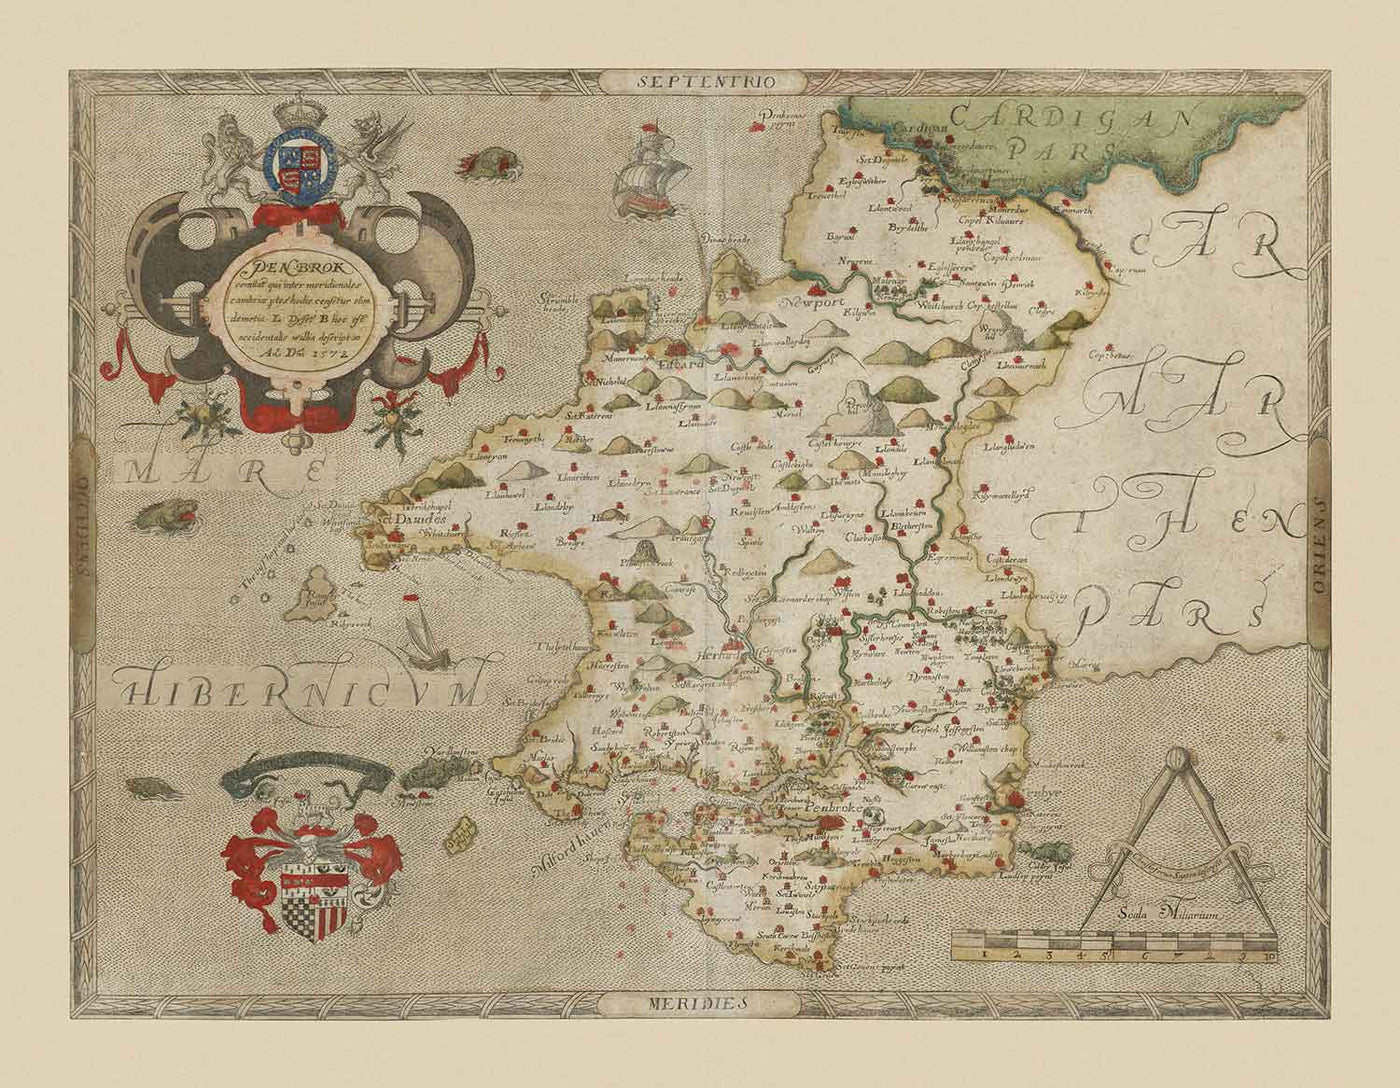 Ancienne carte du Pembrokeshire, Pays de Galles en 1578 par Christopher Saxton - Pembroke, Newport, Cardigan, Fishguard, Haverfordwest